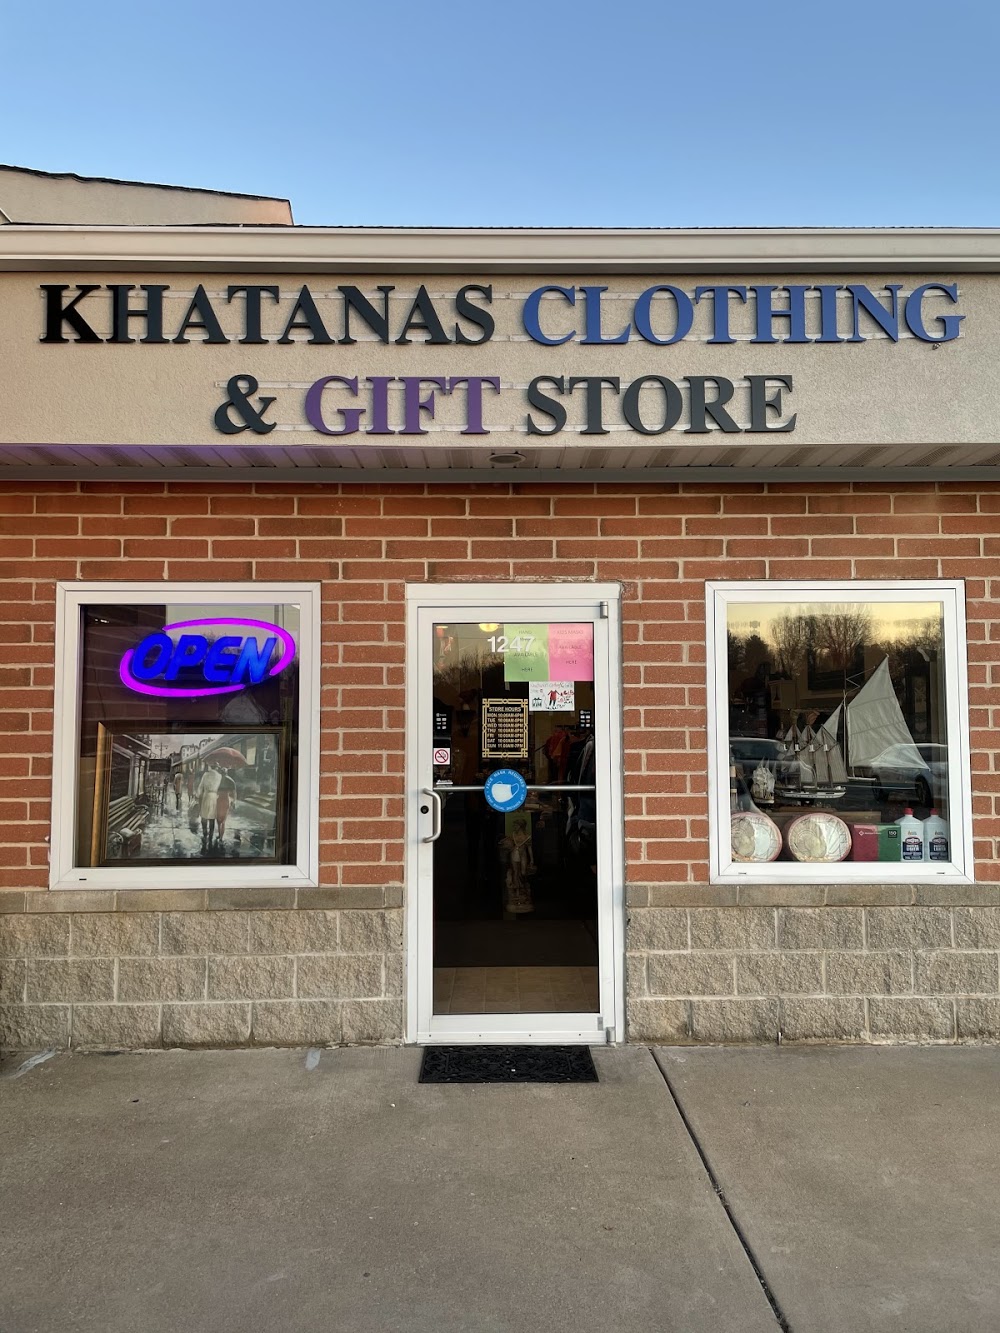 Khatana’s Clothing & Gifts Store